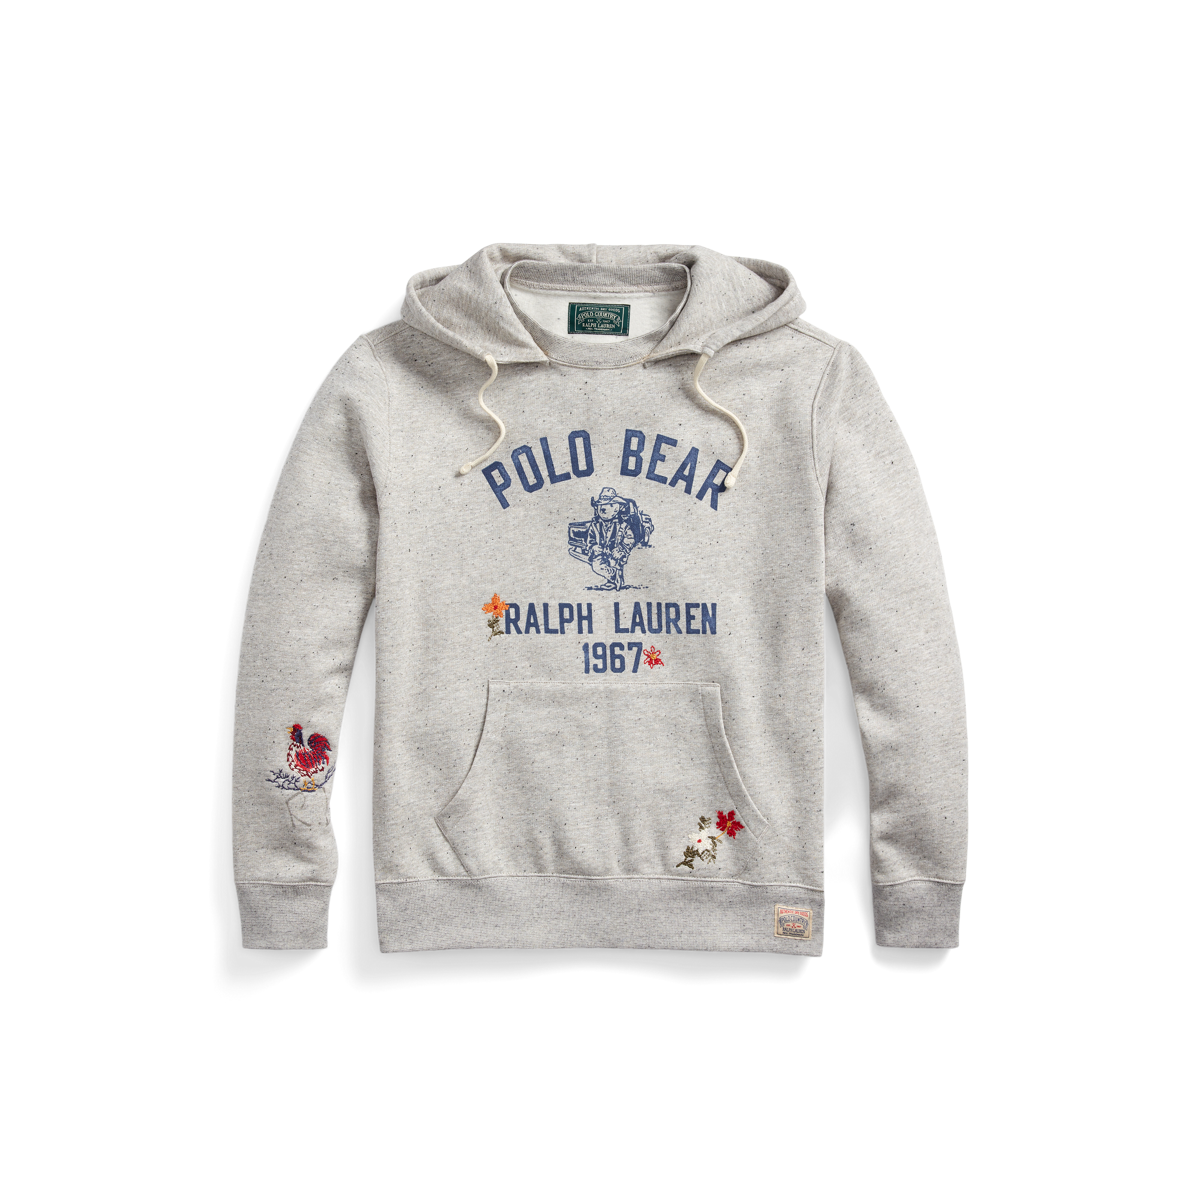 Polo bear  Polo bear, Graphic hoodies, Hoodies